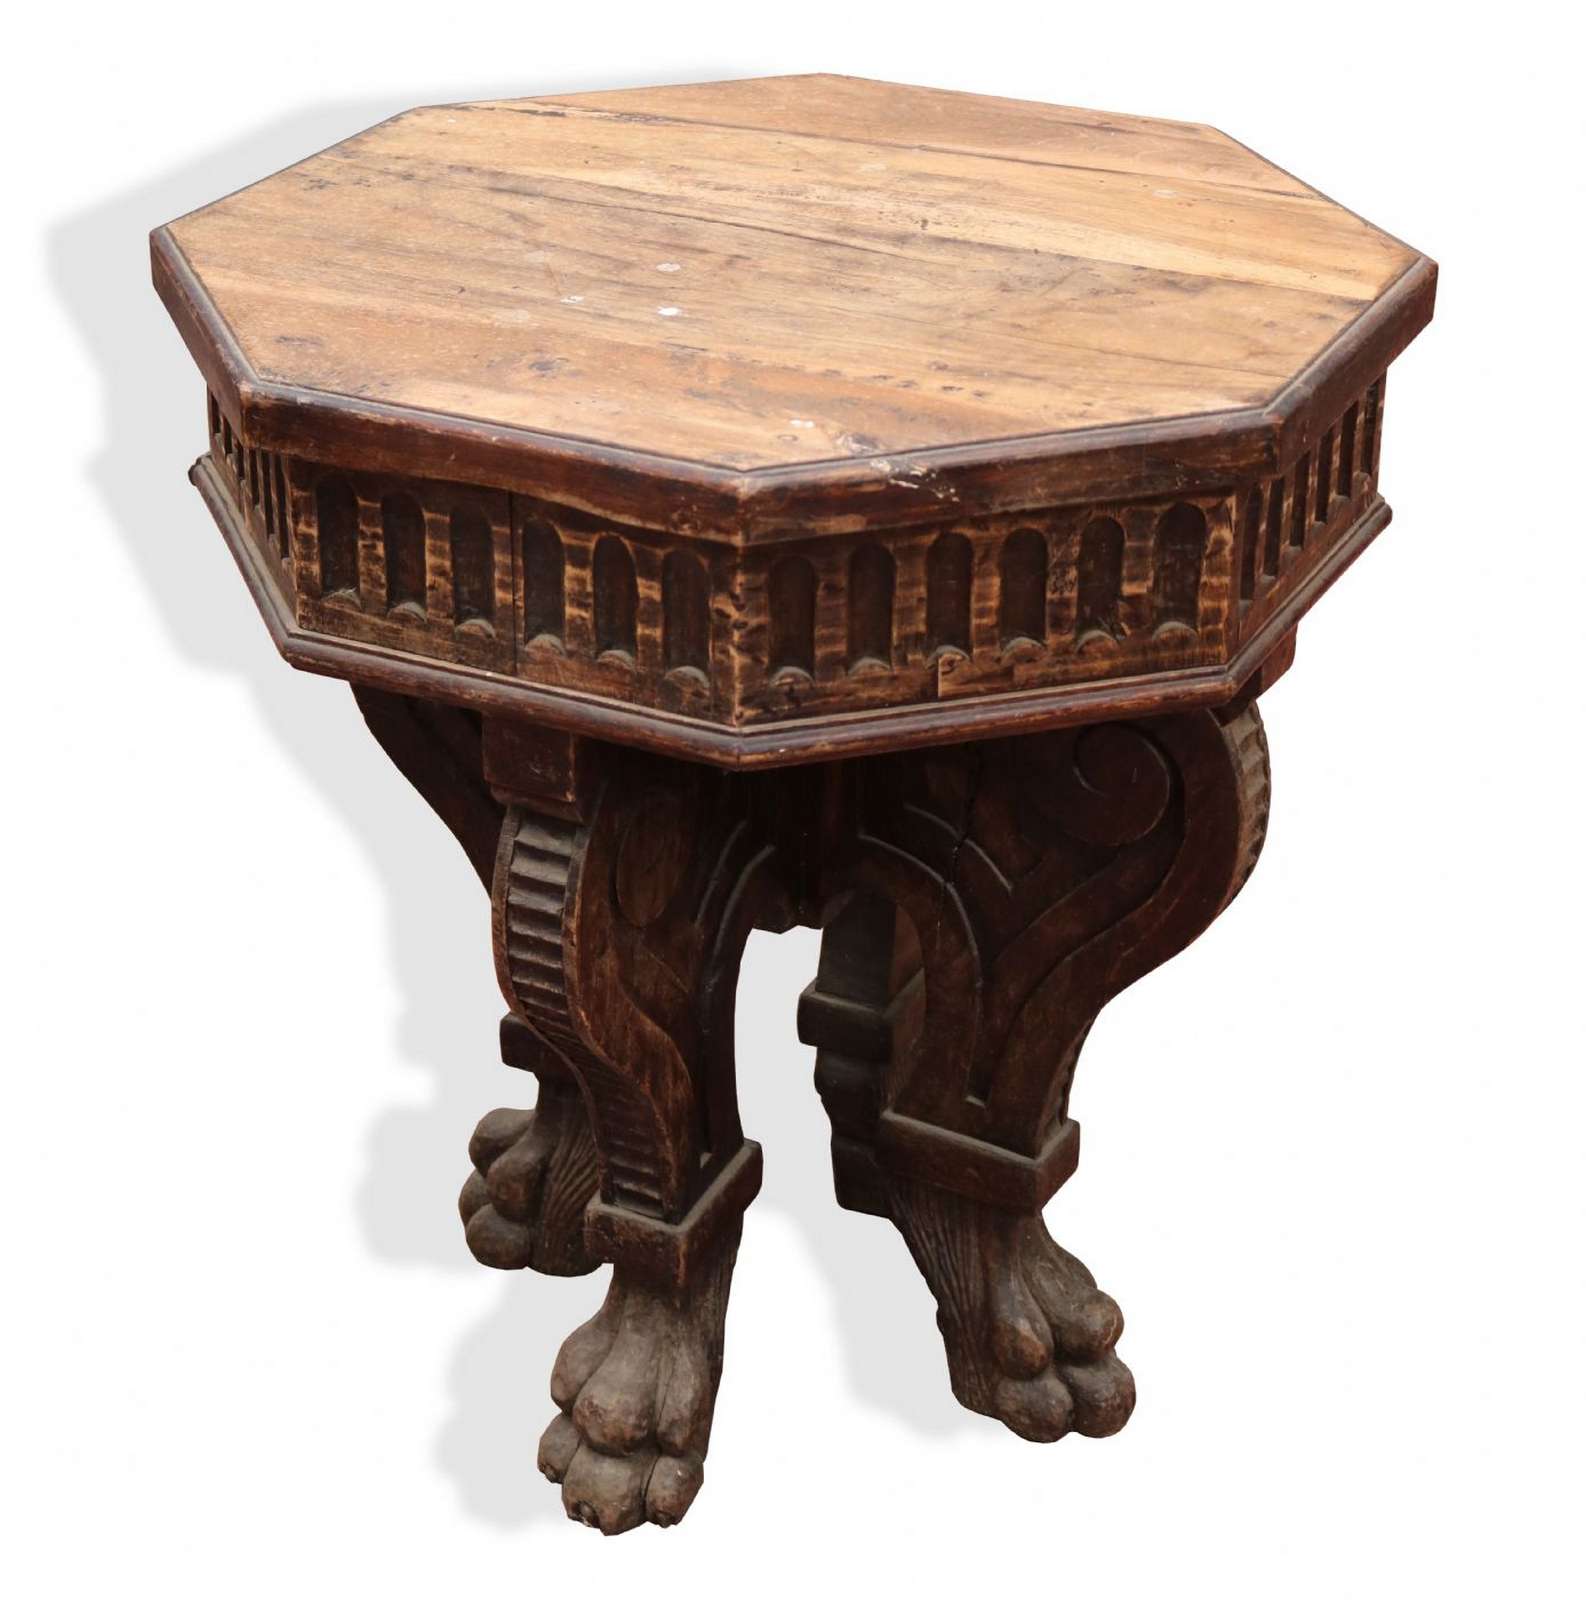 Tavolo in legno. - Tavoli Antichi - Mobili antichi - Prodotti - Antichità Fiorillo